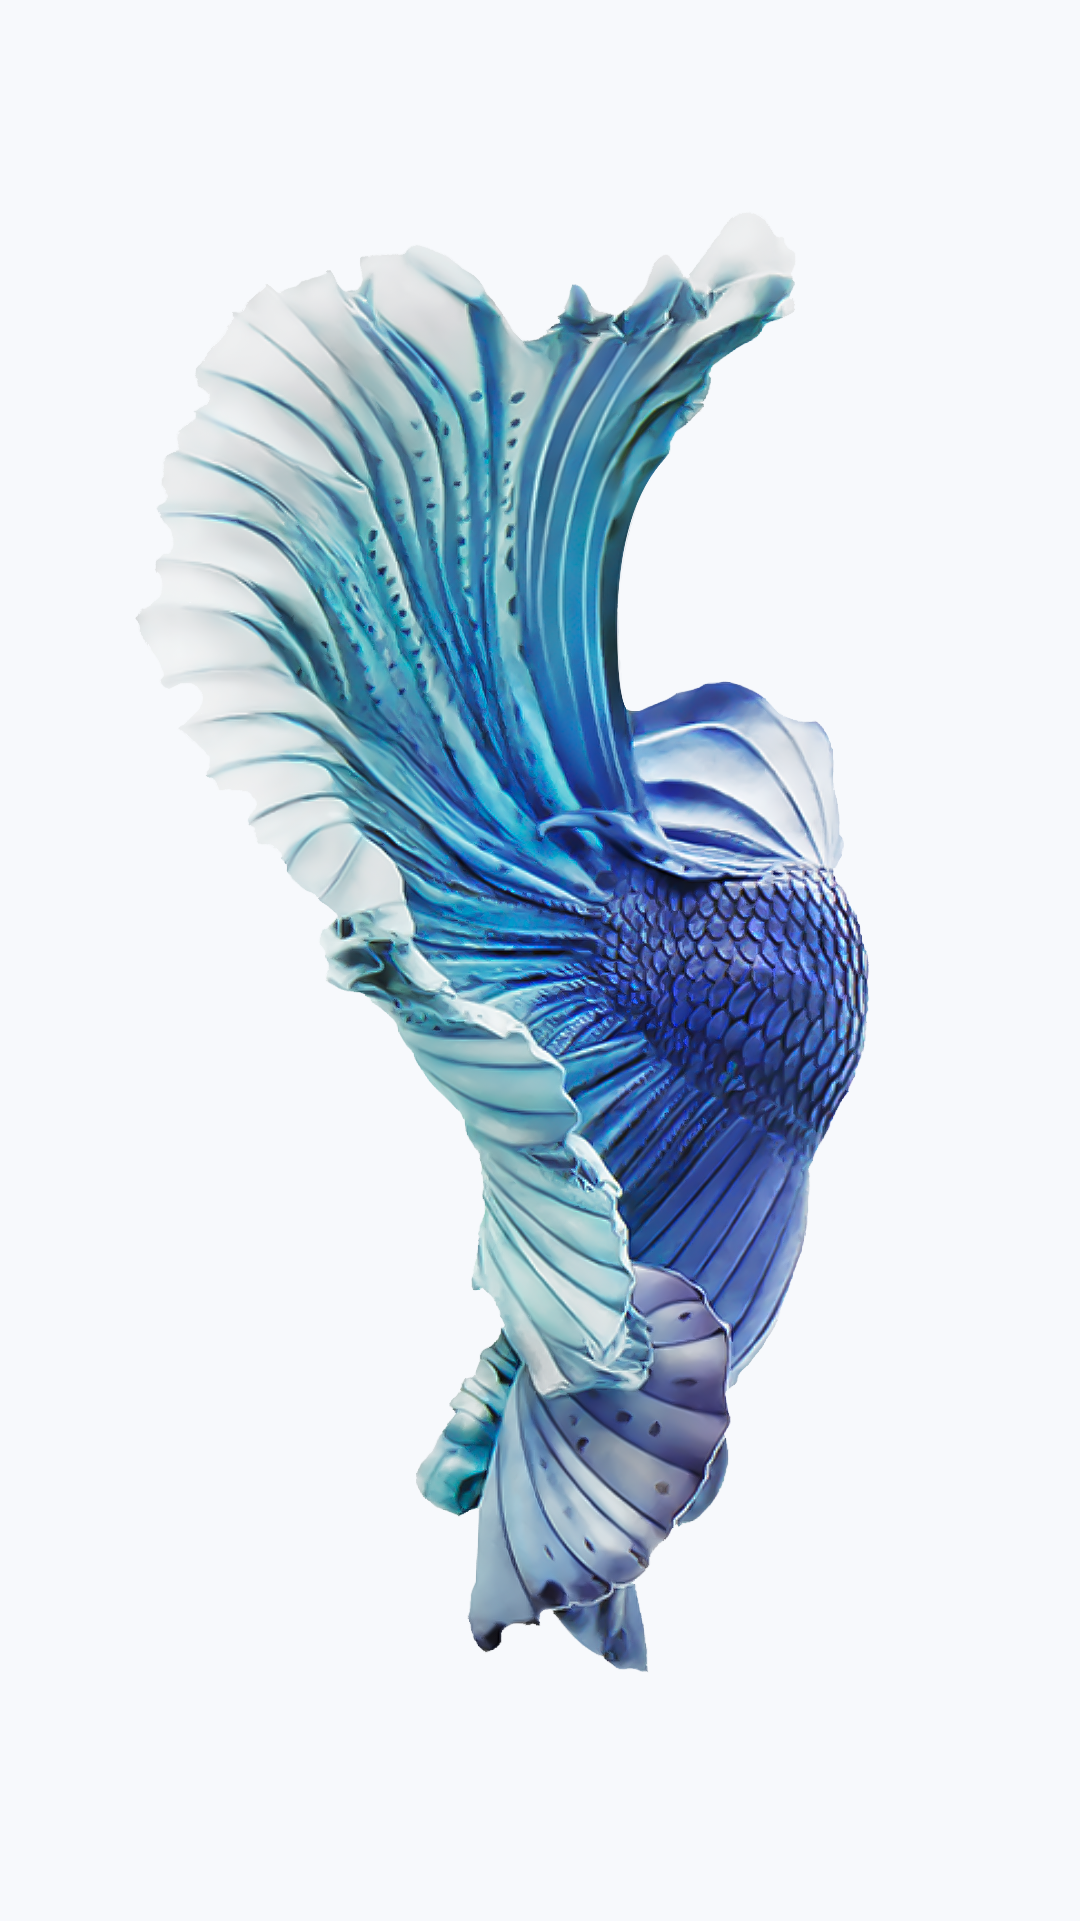 iPhone Fish Wallpapers Free Download | PixelsTalk.Net